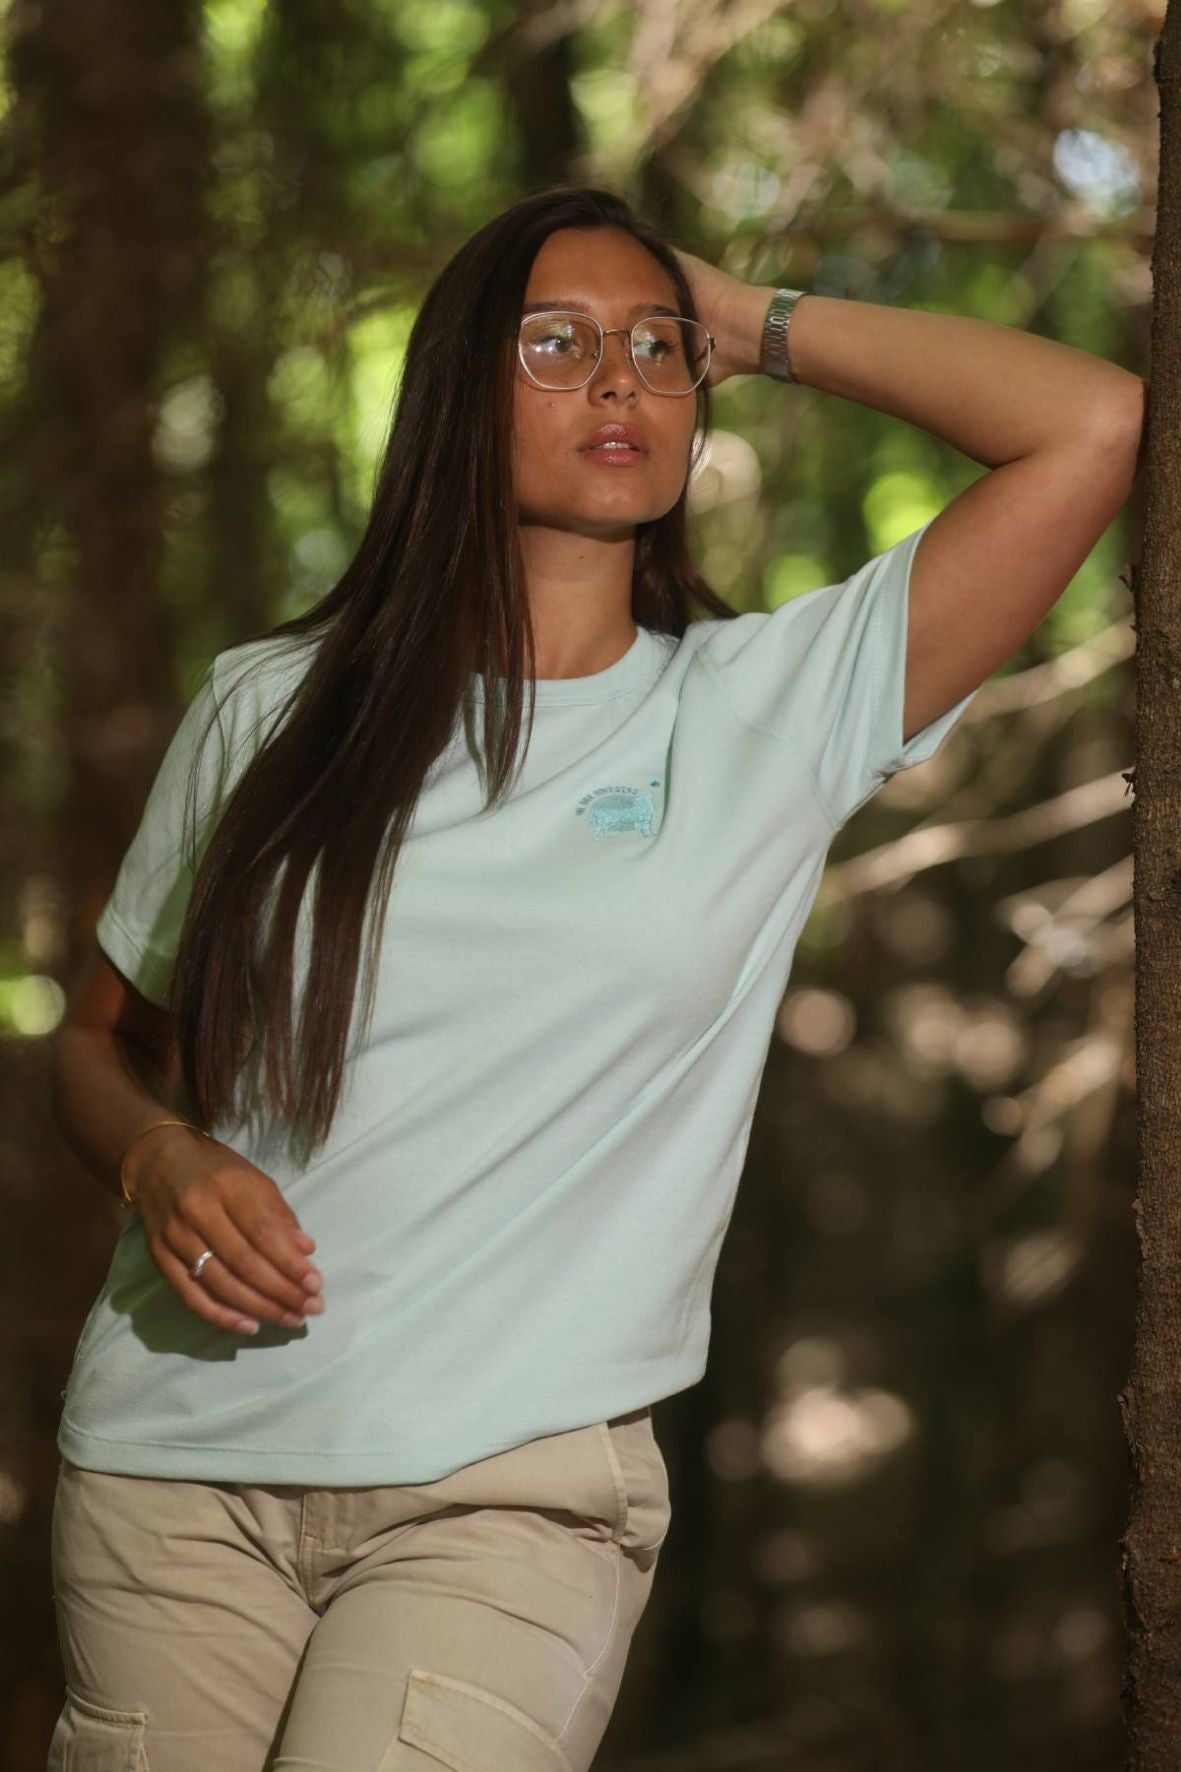 T-shirt mixte éco-responsable 100% recyclé et fabriqué en France - Vert d'eau